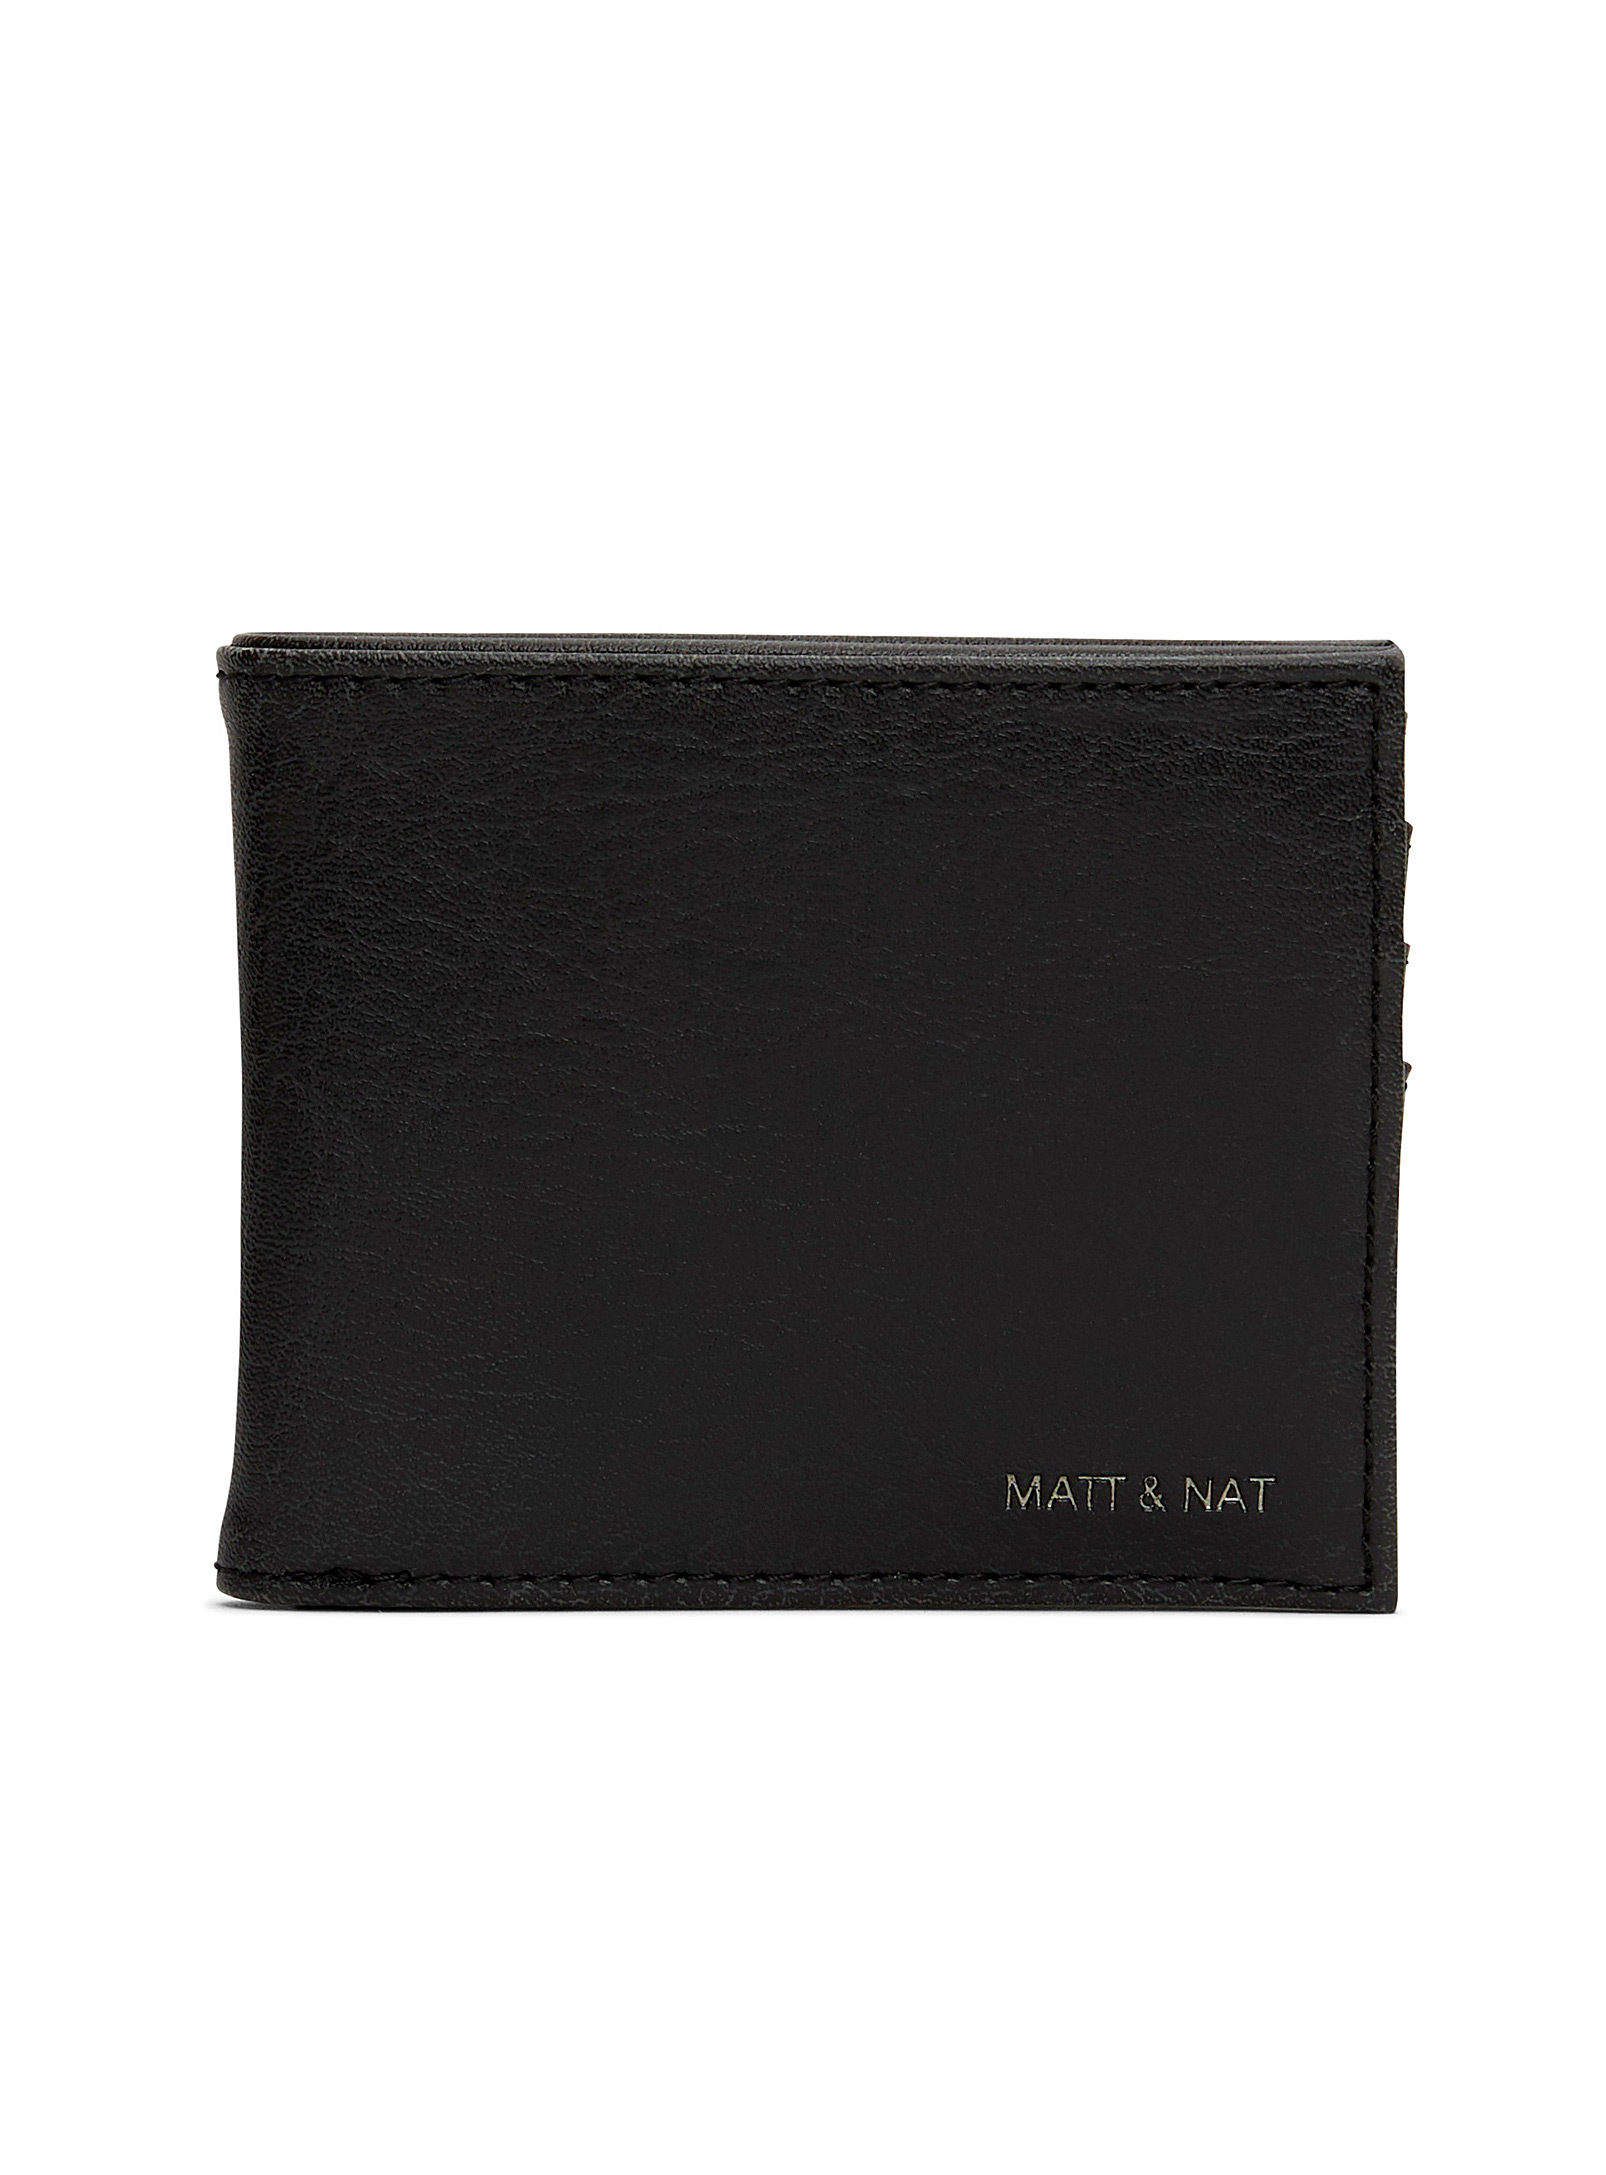 MATT AND NAT matt & nat soho backpack chili matte nickel | Square One